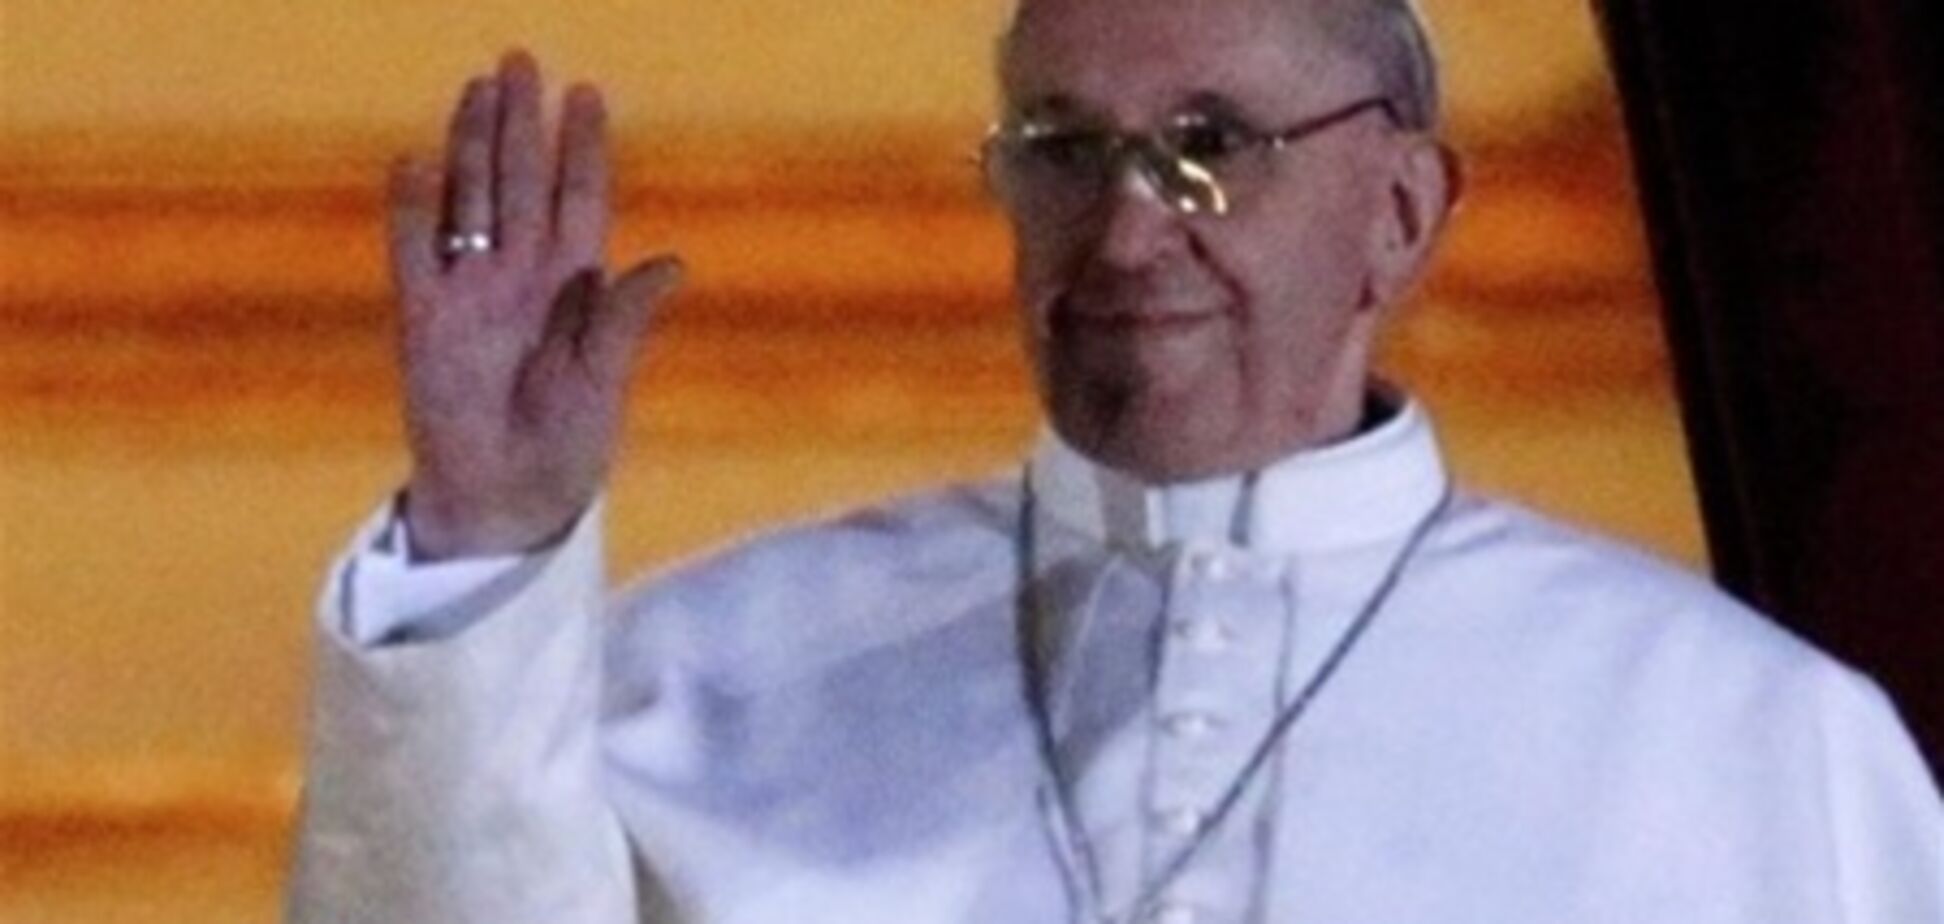 Книги нового Папы Римского бьют рекорды продаж